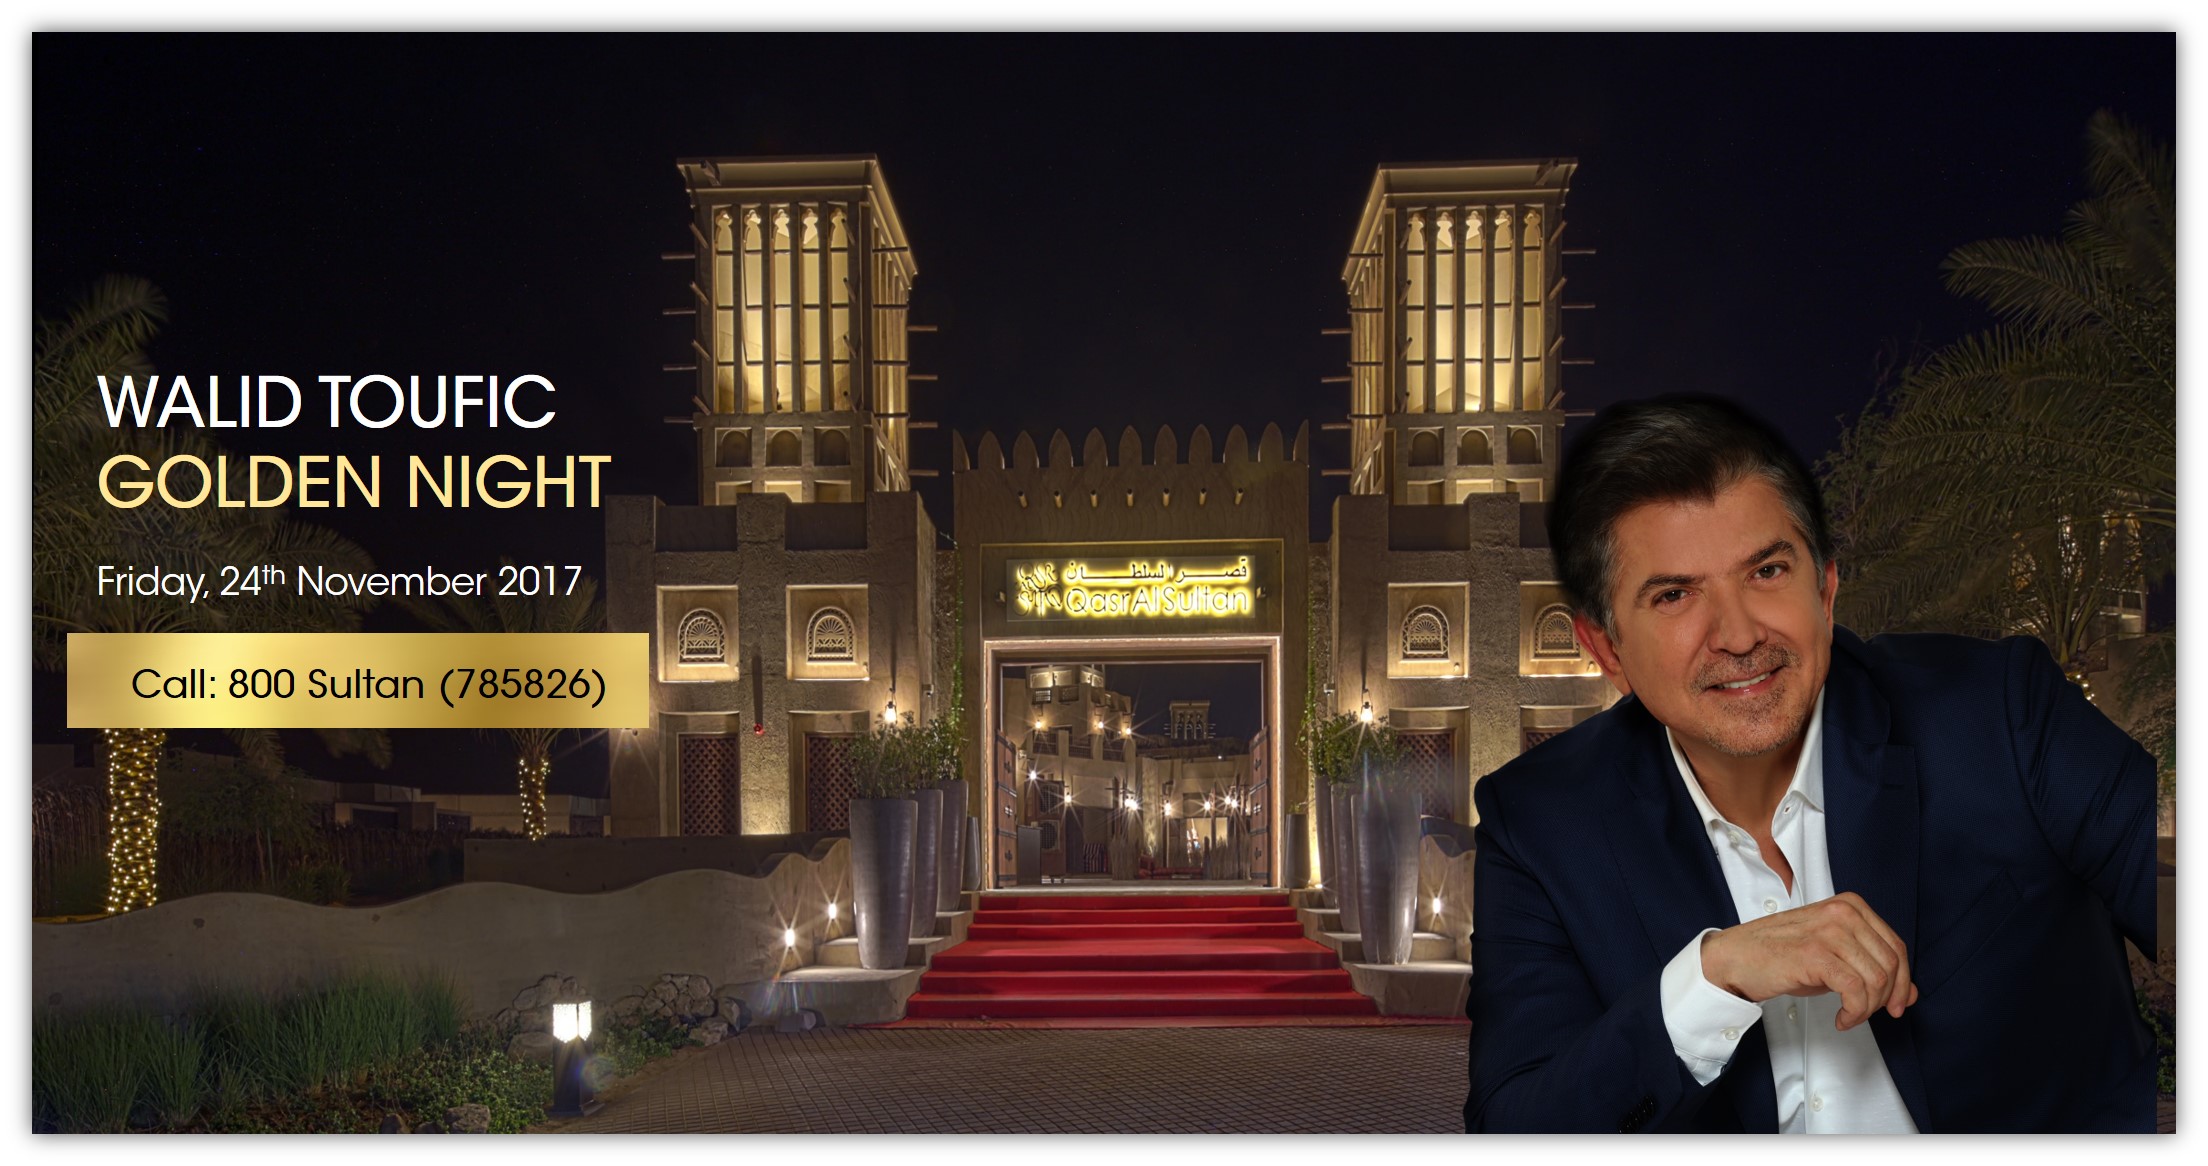 حفل النجم العربي الكبير وليد في دبي خلال نوفمبر 2017